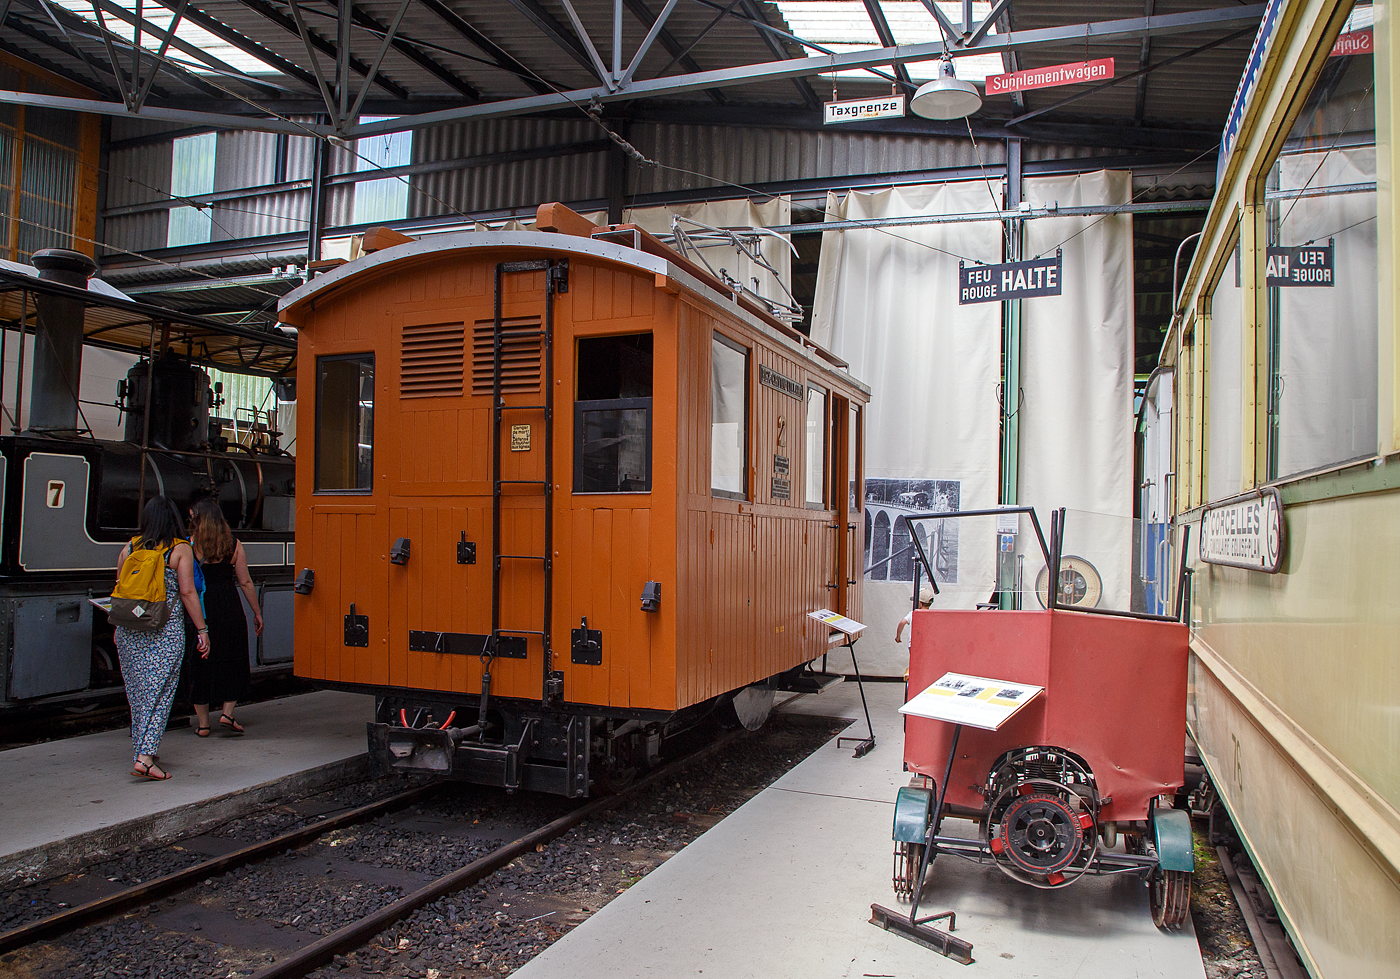 Die elektrische reine Zahnradlokomotive BGV He 2/2 2, später BVB He 2/2 2  La Grisette  der Museumsbahn Blonay–Chamby am 27.05.2022 im Museum Chaulin. Rechts eine kleine Motor-Draisine der RhB, Baujahr ca. 1930.

Die Gleichstrom-Zahnradelektrolok wurde 1899 von der Schweizerischen Lokomotiv- und Maschinenfabrik (SLM) in Winterthur unter der Fabriknummer 1196 gebaut, der elektrische Teil ist von der CIE (Compagnie de l'industrie électrique, ab 1902 CIEM - Compagnie de l’industrie électrique et mécanique und ab 1918 Société Anonyme des Ateliers de Sécheron). Die Lieferung erfolgte an die Chemin de fer électrique Bex–Gryon–Villars (BGV), ab 1905 Chemin de fer Bex–Gryon–Villars–Chesières (BGVC), im Jahr 1942 fusionierten die BGVC mit der VB zur BVB. Im Jahre 1999 fusionierte die BVB mit der Chemin der fer Aigle–Ollon–Monthey–Champéry (AOMC), der Chemin de fer Aigle–Leysin (AL) und der Chemin de fer Aigle–Sépey–Diablerets (ASD) zu den Transports Publics du Chablais (TPC). Mit der Gründung der TPC konnten die vorher zum Teil von der Einstellung bedrohten Schmalspurbahnen ihre Mittel zusammenlegen und ihr Angebot vereinheitlichen.

Die Lok erhielt 1920 einen neuen Lokomotivkasten und war so bis 1985 bei der BVG, insbesondere für den Schneepflugdienst, in Betrieb. Den Spitznamen „la Grisette“ erhielt sie, weil sie ursprünglich eine graue Lackierung trug. Später ging sie an den Verein B.V.B. Promotion, der sie 1997 nicht betriebsfähig restaurierte, im Oktober 2011wurde sie dann an die Museumsbahn Blonay–Chamby und war bis 2014 in einer Lagerhalle abgestellt. Da die SLM He 2/2 elektrische Lokomotiven mit reinen Zahnradantrieb sind und so keinen Adhäsionsantrieb besitzen, können sie sich also nur in einem mit Zahnstange versehenen Gleis fortbewegen, so bleibt die BVB He 2/2 2  La Grisette  bei der BC wohl eine reines Ausstellungsexponat.

SLM He 2/2 sind elektrische Lokomotiven mit Zahnradantrieb, die von der Schweizerischen Lokomotiv- und Maschinenfabrik (SLM) gebaut und mit Drehstrom- oder Gleichstrom-Ausrüstungen verschiedener Hersteller wie Alioth, BBC, CIE, MFO und Rieter versehen wurden. He 2/2 wurden von 1898 bis 1957 in den Spurweiten 800, 1.000 und 1.435 mm hergestellt. Sie weisen keinen Adhäsionsantrieb auf, können sich also nur in einem mit Zahnstange versehenen Gleis fortbewegen.

Bei Lokomotiven der Bex-Villars-Bretaye-Bahn (BVB) und zwei Triebzahnrädern handelt es sich um reine Zahnradlokomotiven. Die beiden Triebzahnräder, für das Zahnstangensystem Abt sind nicht auf den Laufachsen angebracht, sondern unmittelbar neben der Laufachsen gegen die Fahrzeugmitte. Der mechanische Teil stammt von der Schweizerischen Lokomotiv- und Maschinenfabrik (SLM) in Winterthur.

Die 5.000 mm langen Lokomotiven mit einem Dienstgewicht von rund 14,8 t verkehren mit ihren 2 x 81 kW = 162 kW (220 PS) Leistung auf Neigungen bis zu 200 ‰. Sie erreichen dabei bei der Bergfahrt eine Geschwindigkeit von rund 10 km/h, bei Talfahrt war die Geschwindigkeit aus Sicherheitsgründen auf maximal 7,5 km/h limitiert.

TECHNISCH DATEN:
Baujahr: 1899
Nummerierung: 1 und 2 (später noch 3 und 4 von der MC)
Spurweite: 1.000 mm
Achsfolge: 1zz1
Zahnradsystem: 	Abt
Länge über Puffer : 5.000 mm
Länge Lokkasten: 4.250 mm 
Breite: 2.500 mm
Achsstand: 2.270 mm (720 mm – Zahnradabstand 920 mm – 520 mm)
Zahnradteilkreis-Ø: 573 mm
Dienstgewicht: 14,8  t
Leistung: 2 x 110 kW
Zul. Höchstgeschwindigkeit: 10 km/h (Talfahrt 7,5 km/h)
Übersetzung:  1:7,84
Stromsystem: 700 V DC (gleichstrom)
Max. Neigung : 200 ‰